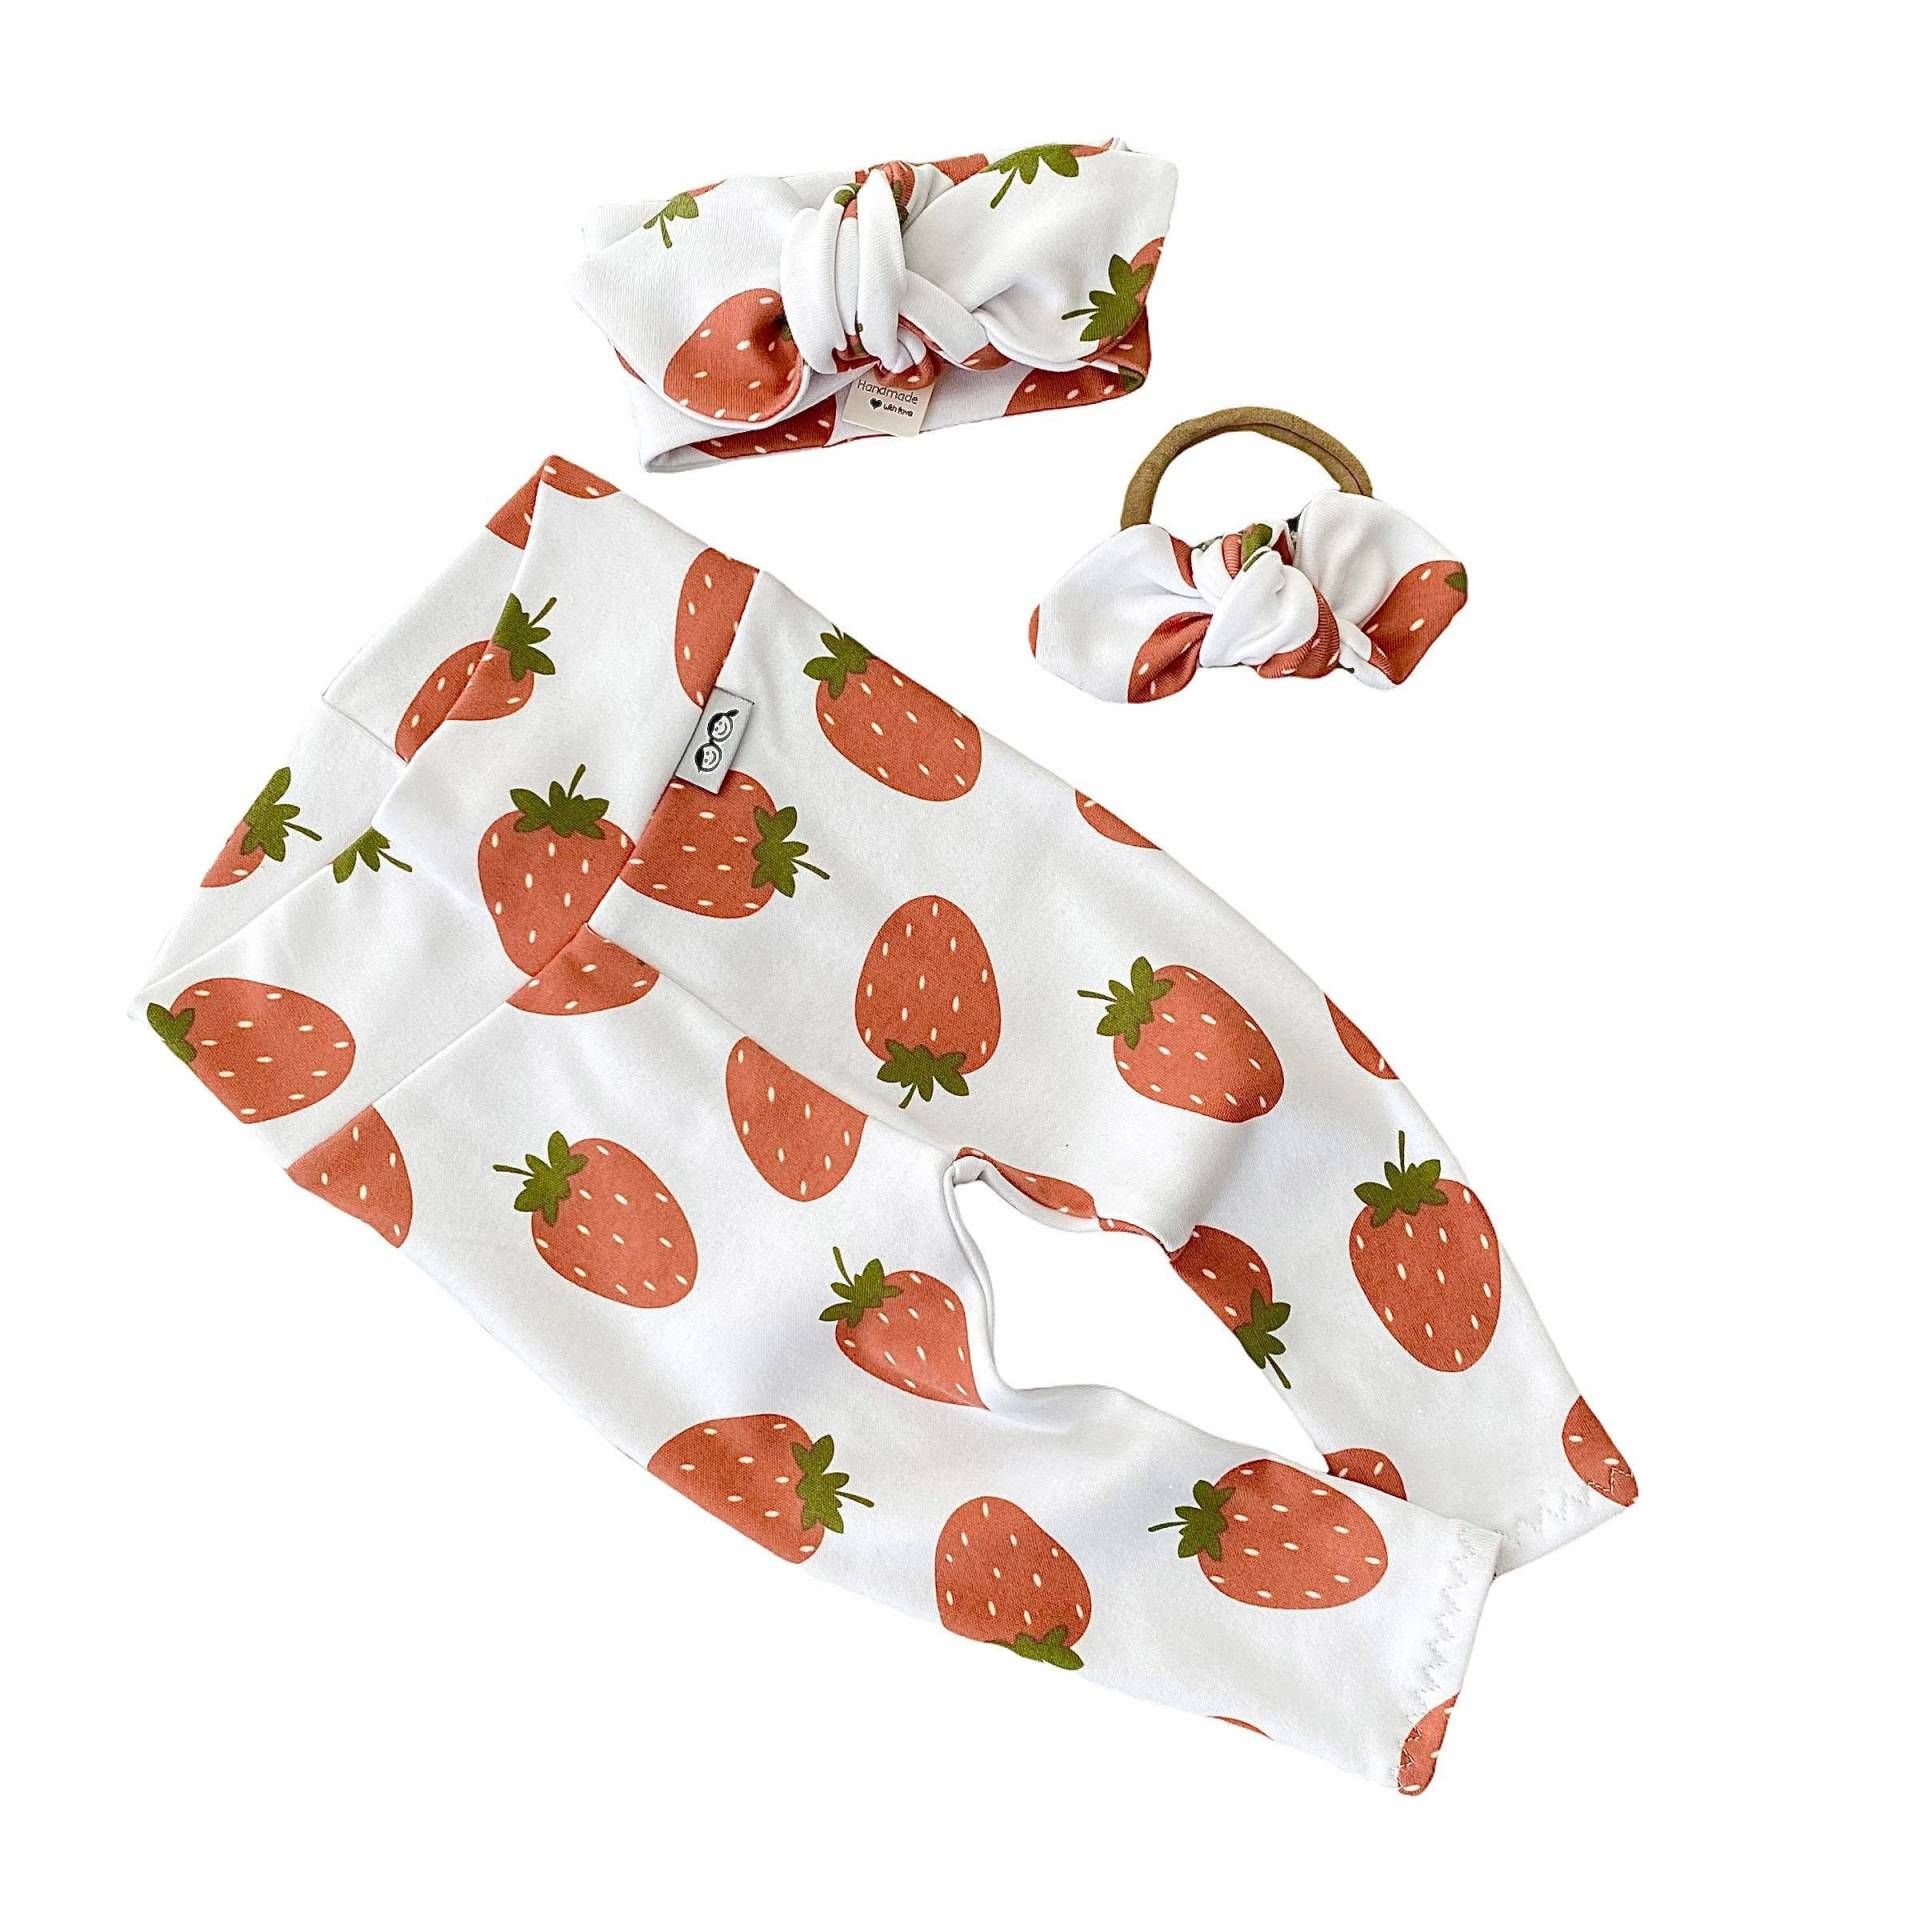 Erdbeeren Auf Weißen Leggings Und/Oder Stirnband Set, Frühchen Mädchen Kleidung, Neugeborenen Coming Home Outfit, Süße Kleinkind Hose, Beere Print von DudisDesign